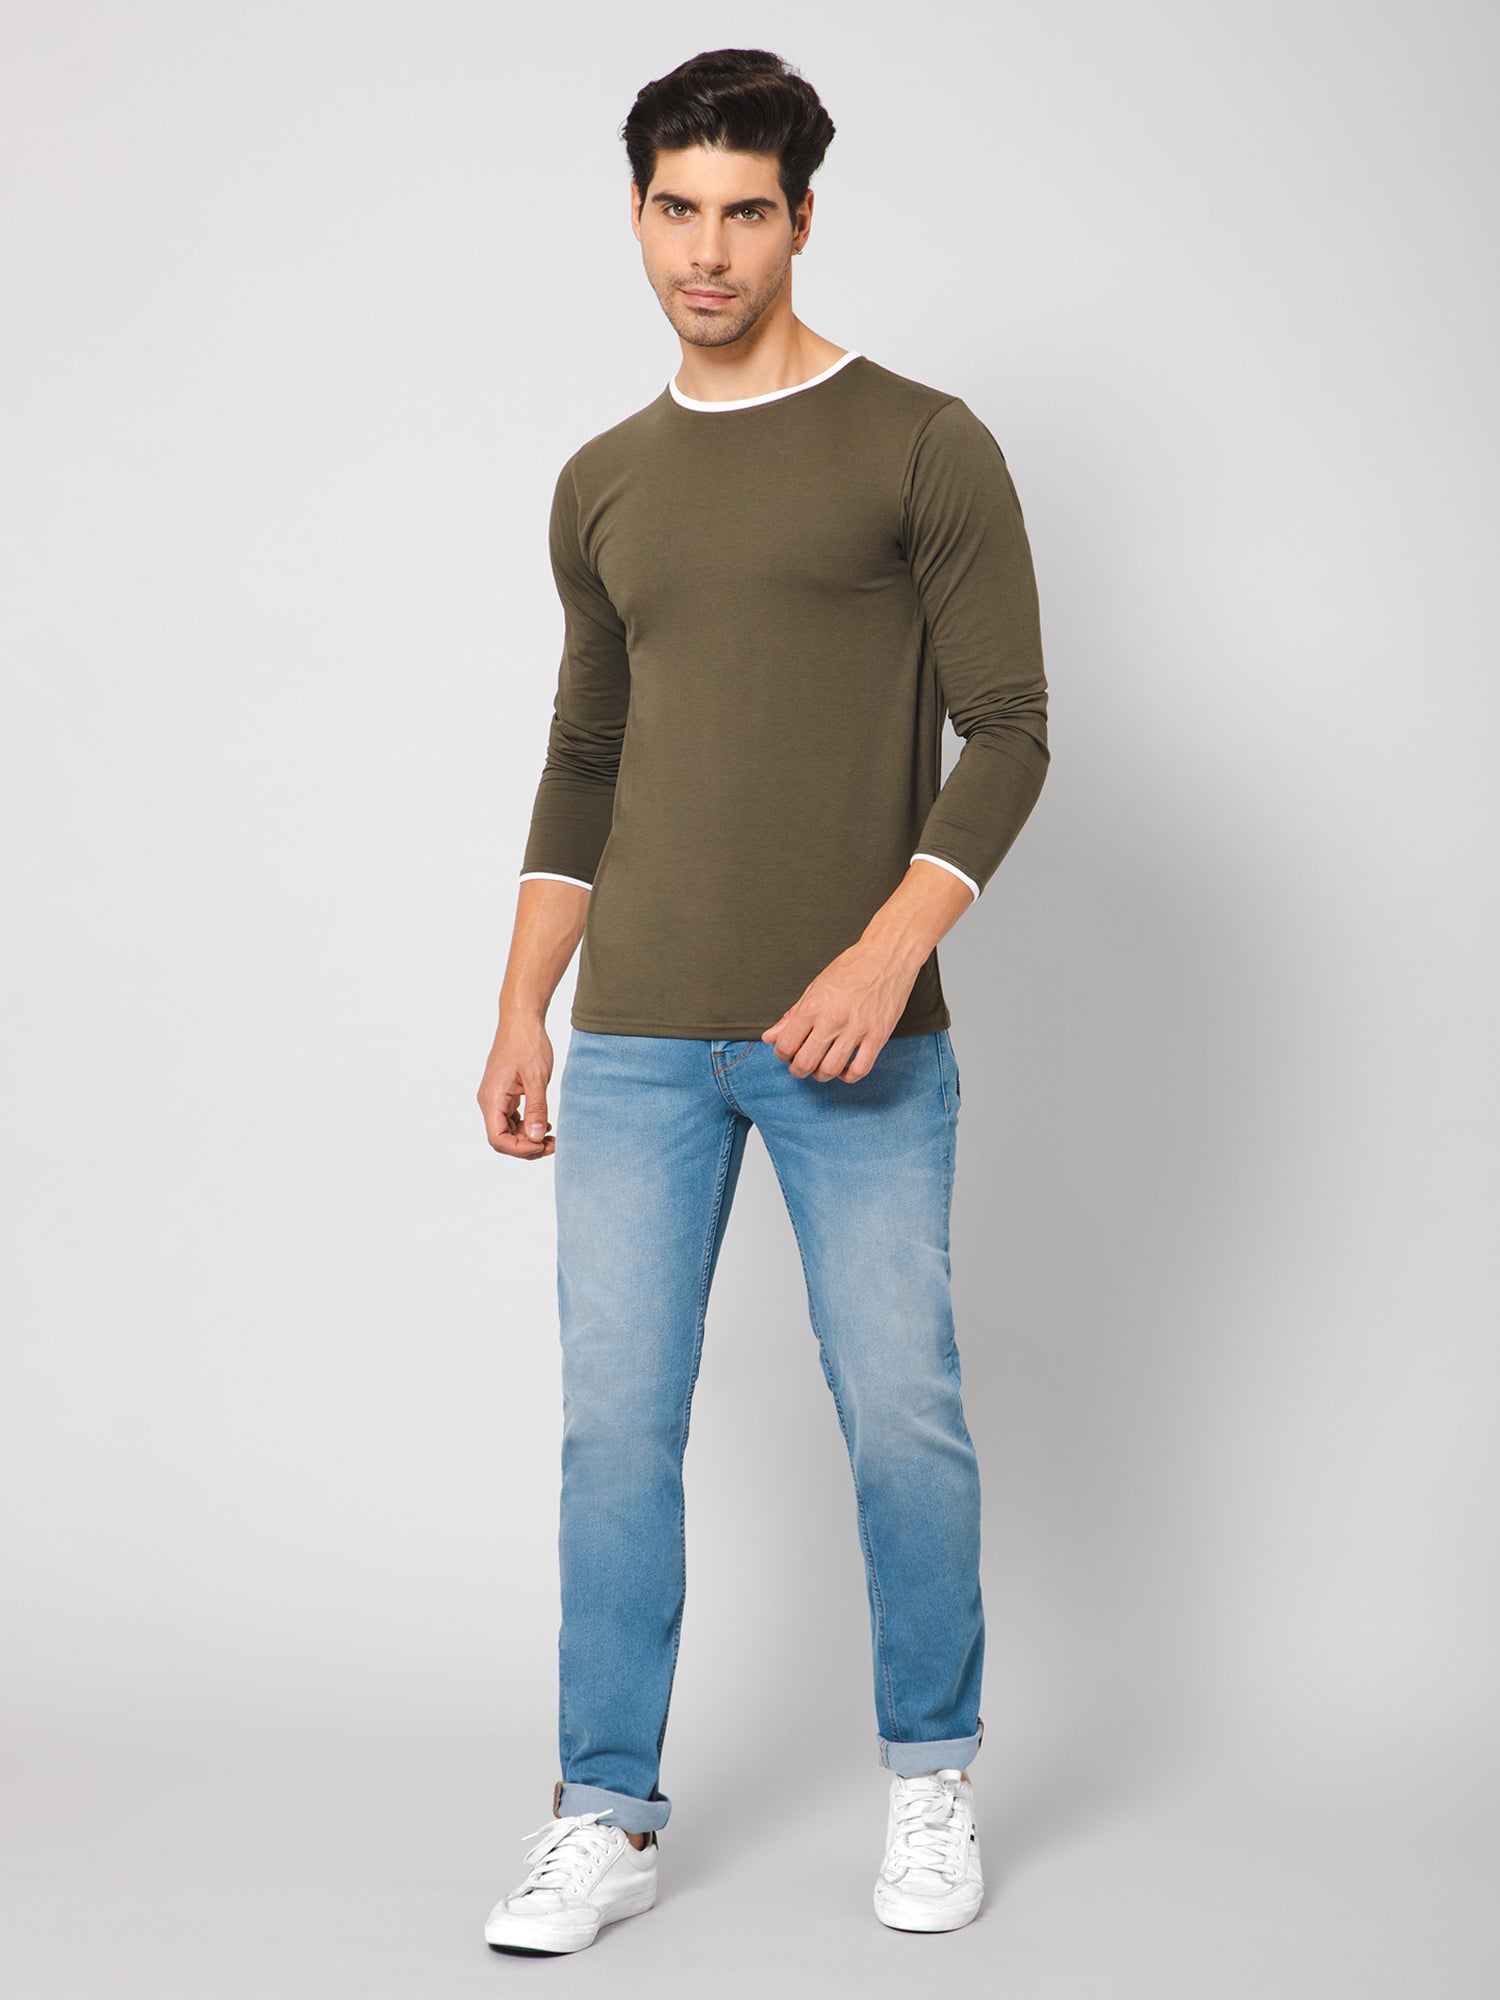 Men's Long Sleeve T-Shirts & Henleys | Hollister Co.